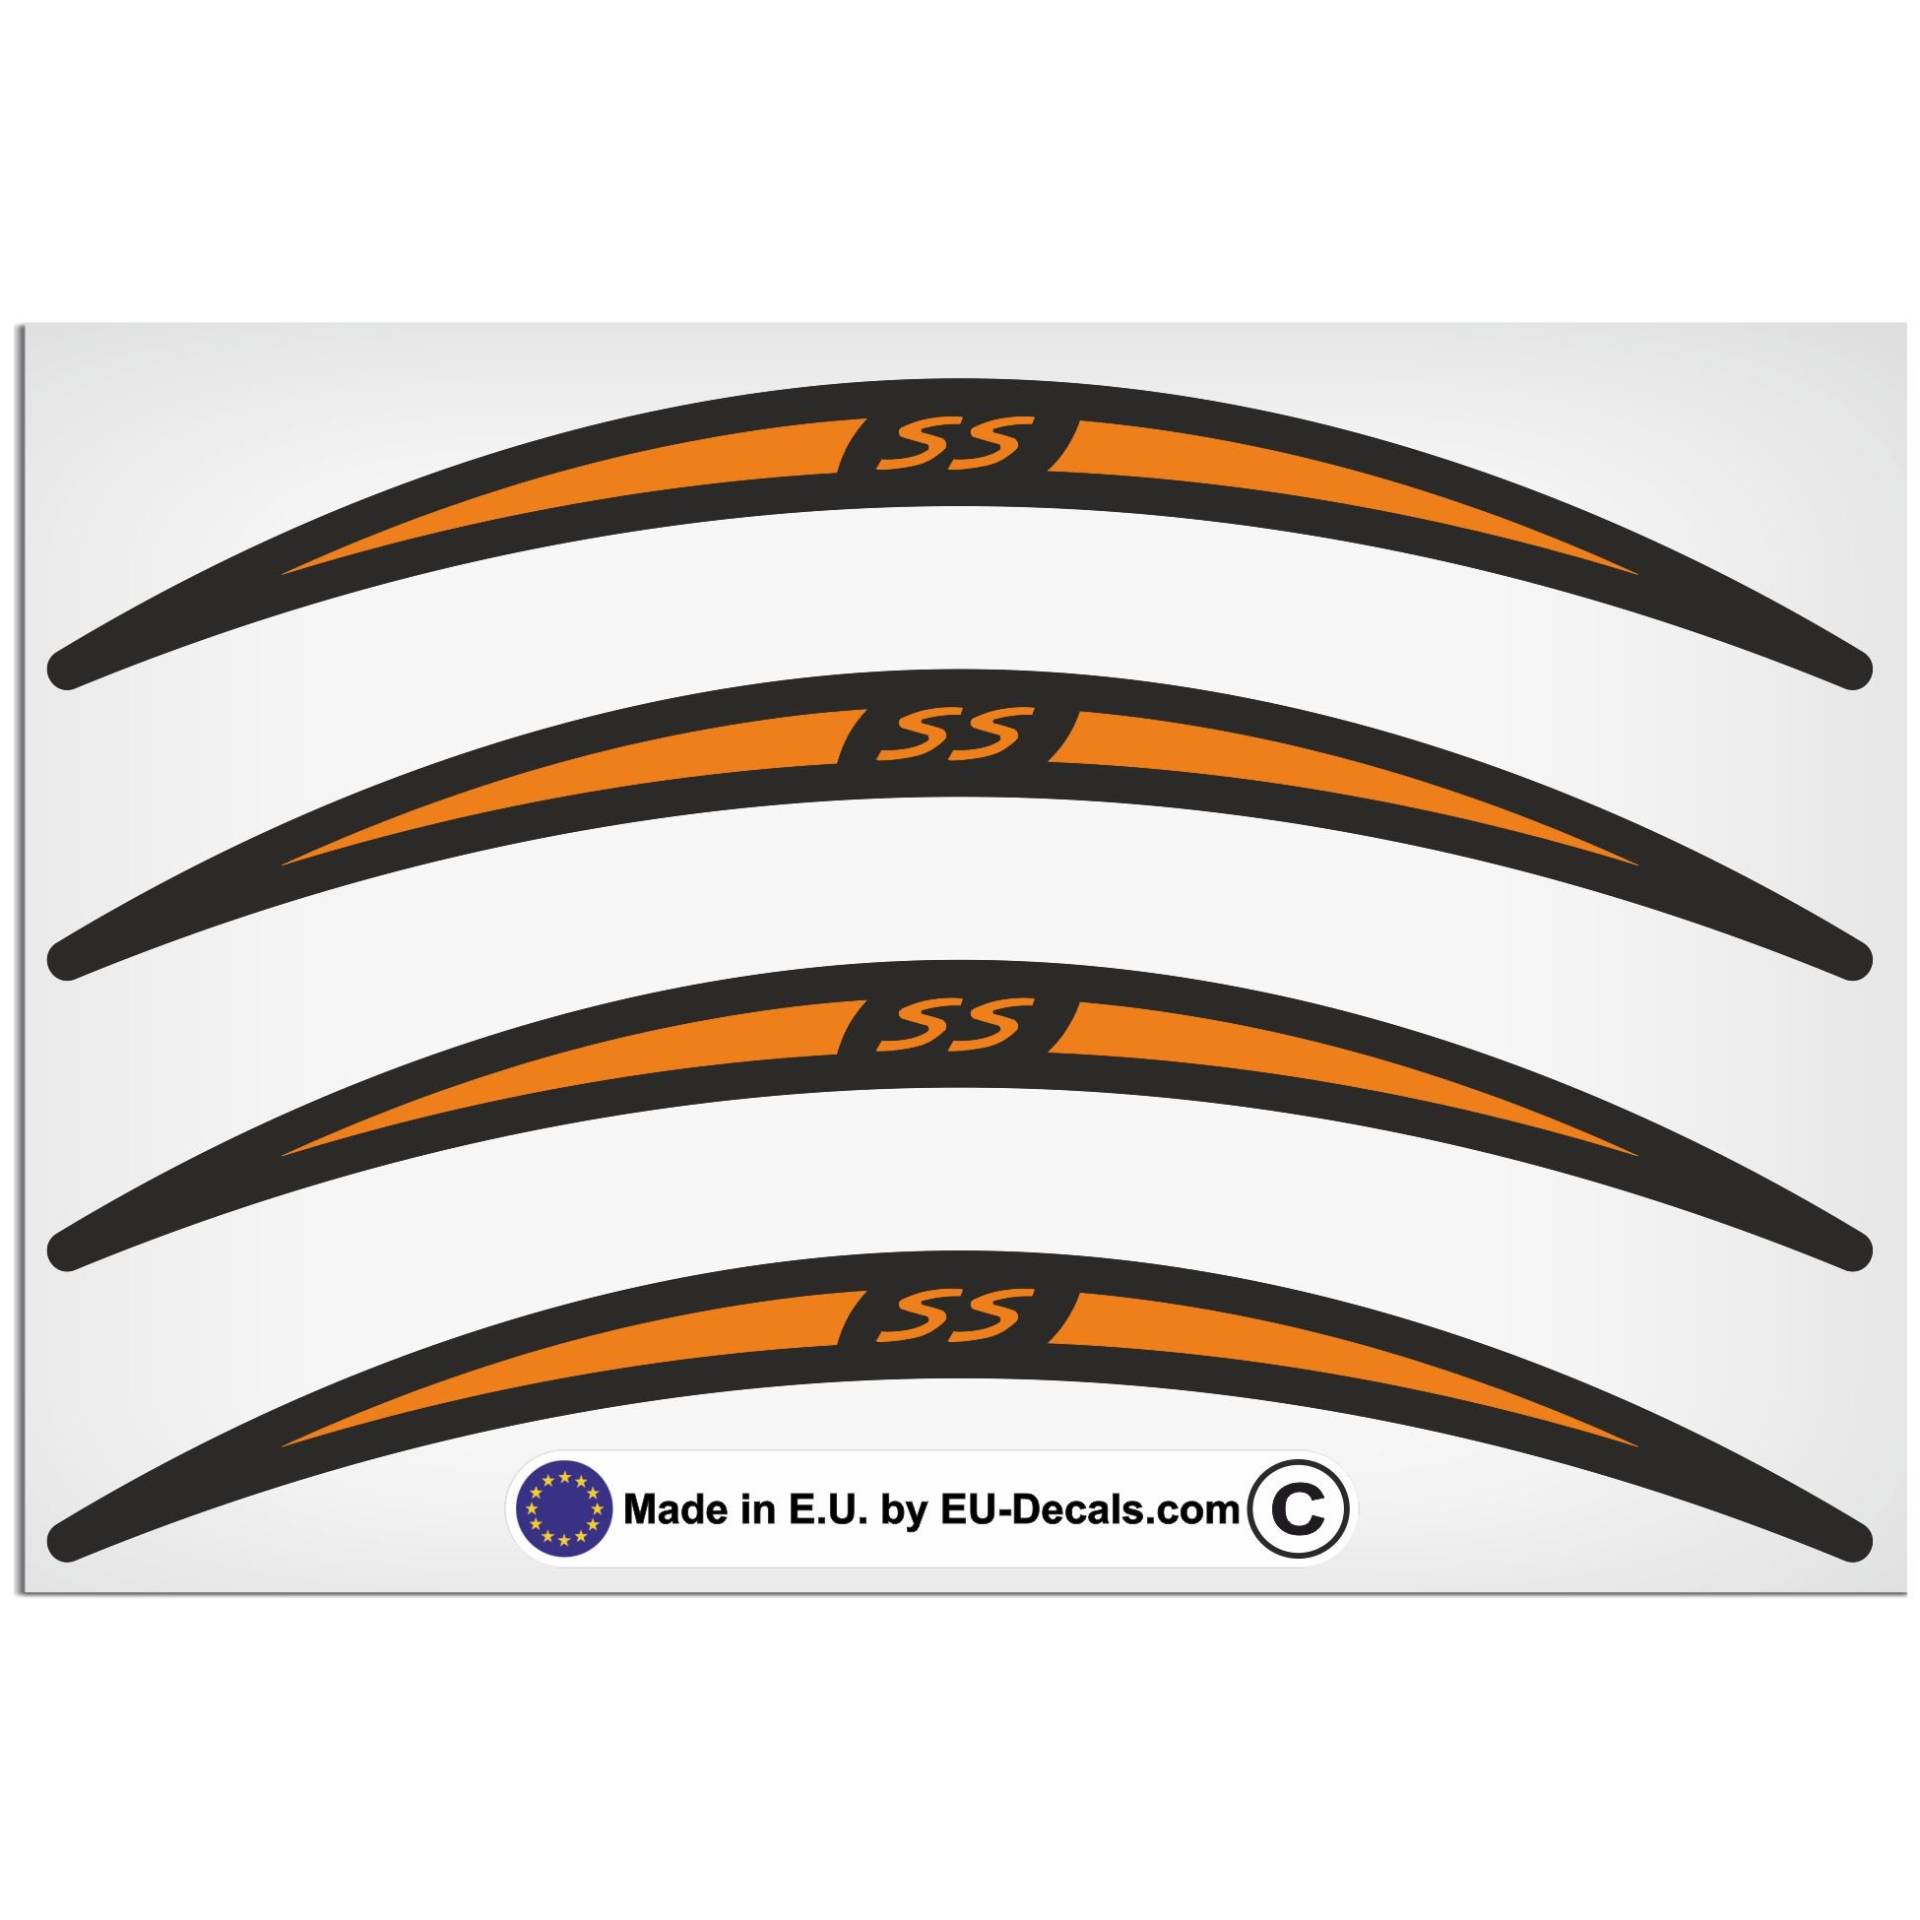 EU-Decals - MioVespa Collection SS 4X Felgenrandaufkleber lang orange auf schwarz für Vespa GTS 300 Super Sport Aufkleber laminiert von EU-Decals - MioVespa Collection